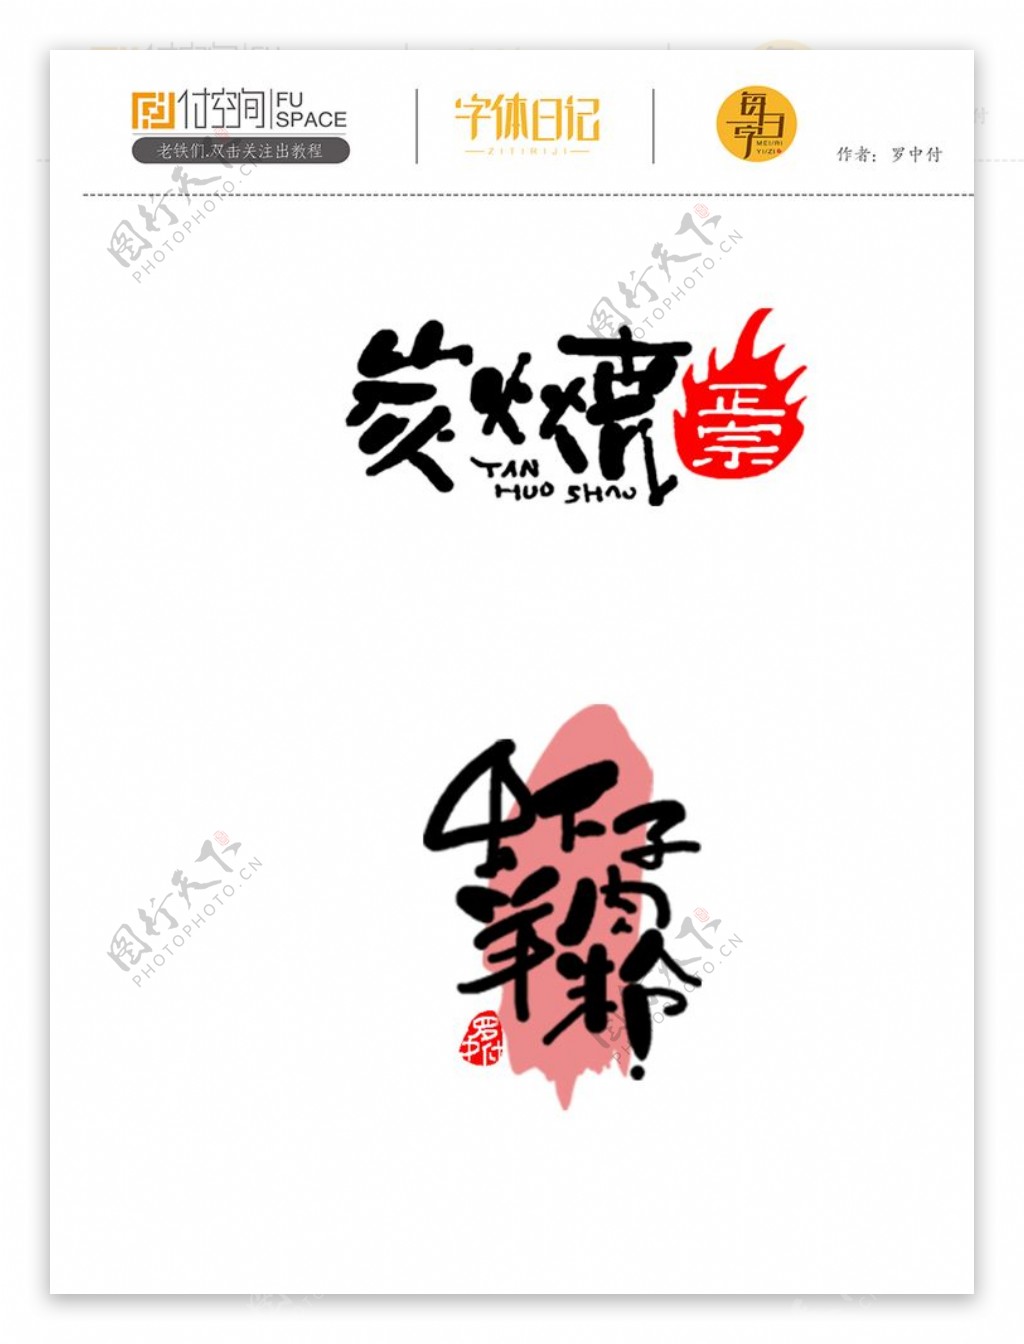 日式手绘风格字体设计